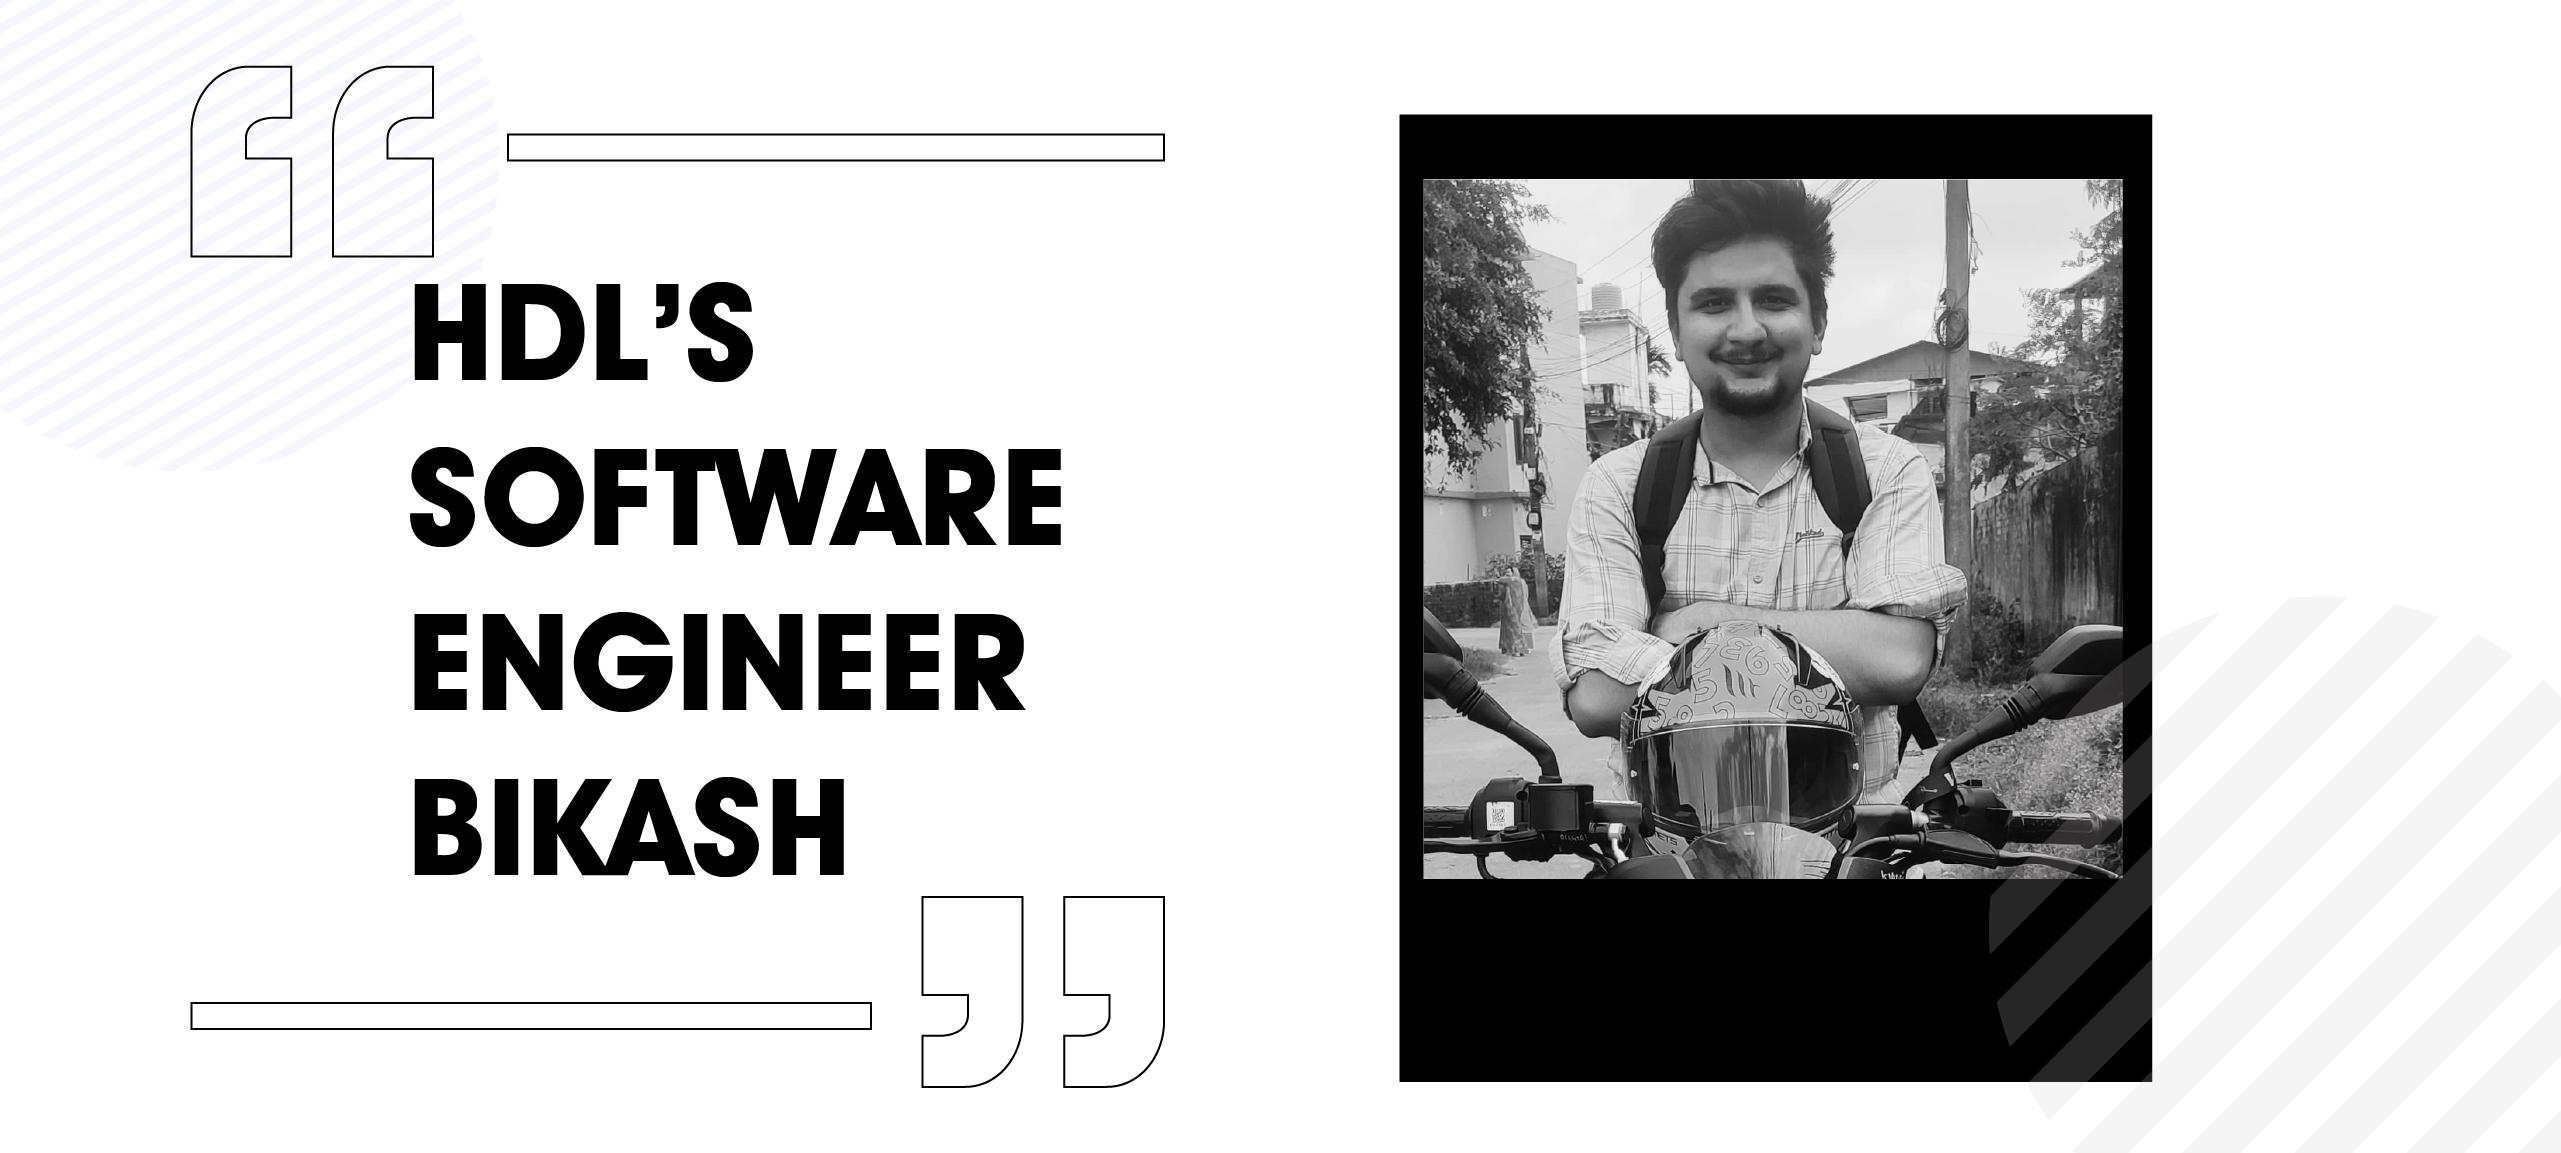 HDL's Software Engineer Bikash